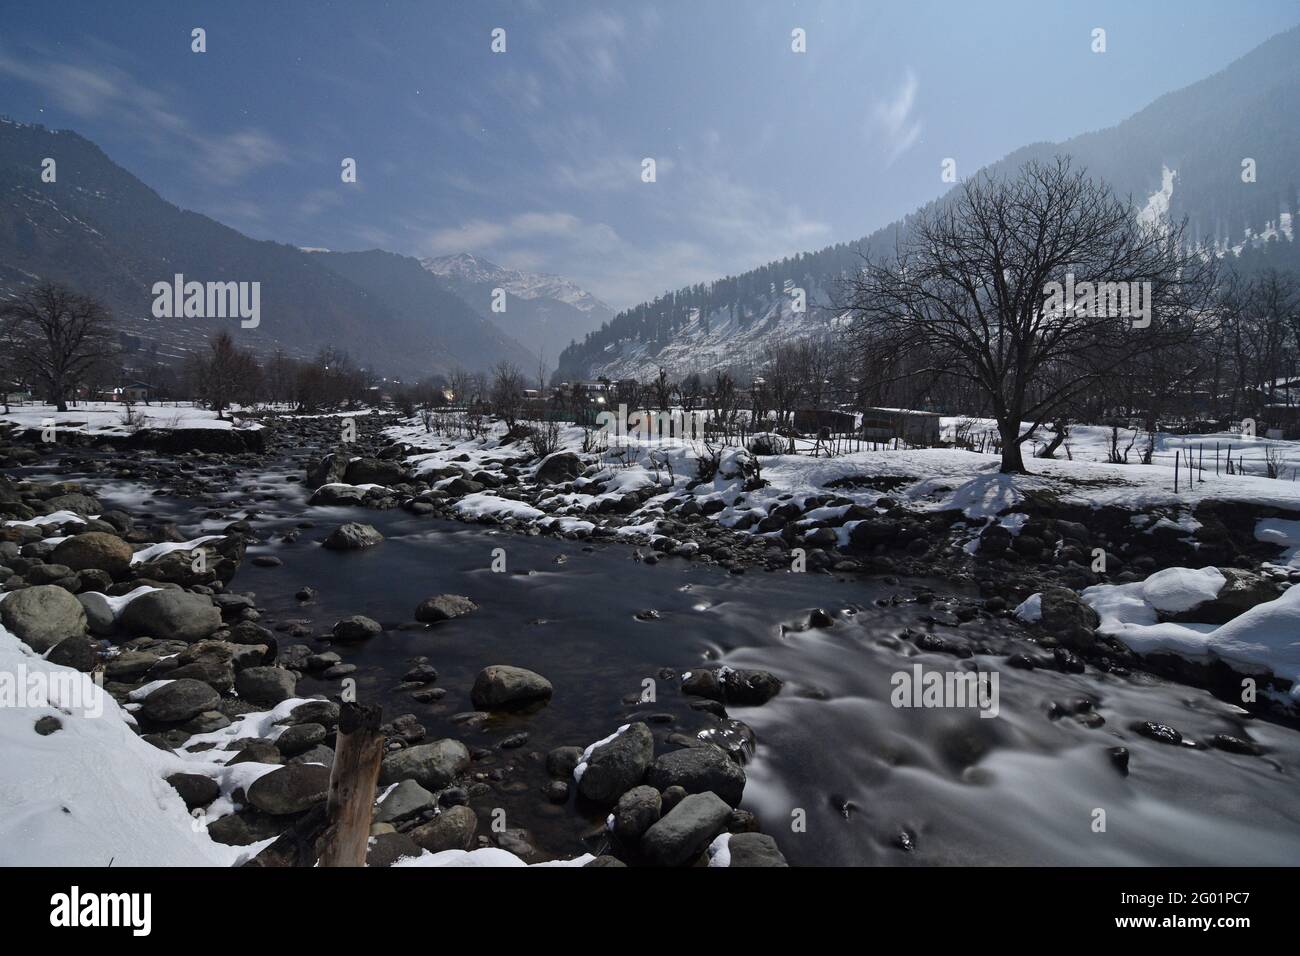 Vallée de Pahagam et rivière Lidder à Full Moonlight, Cachemire. Tourné à 2 heures du matin sous pleine lune. Janvier 2021 Banque D'Images